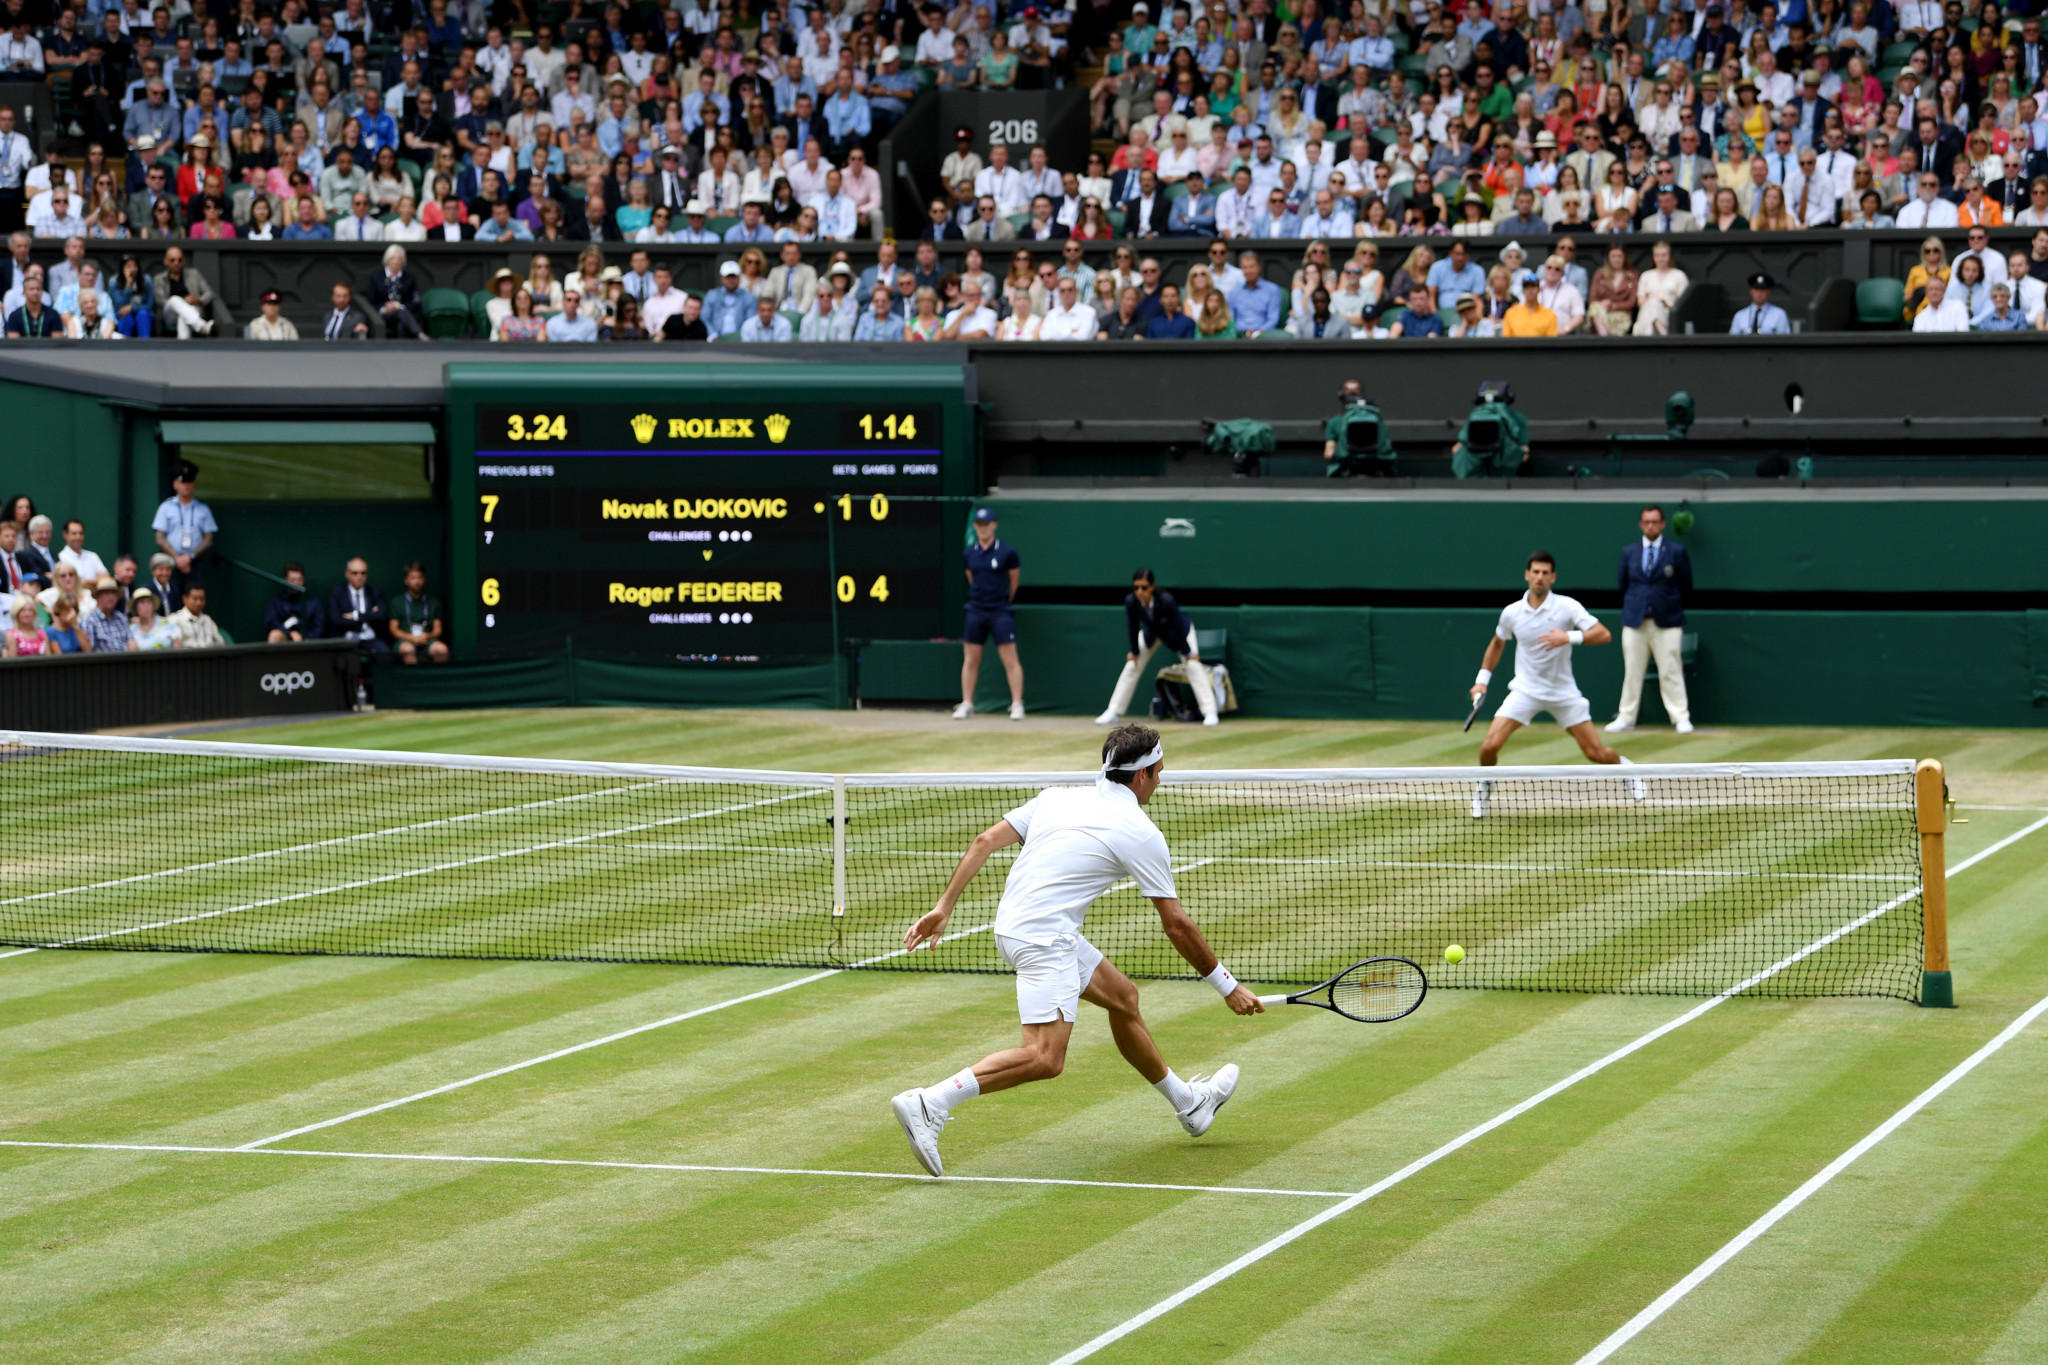 Novak Djokovic beat Roger Federer in an epic Wimbledon final ©Getty Images